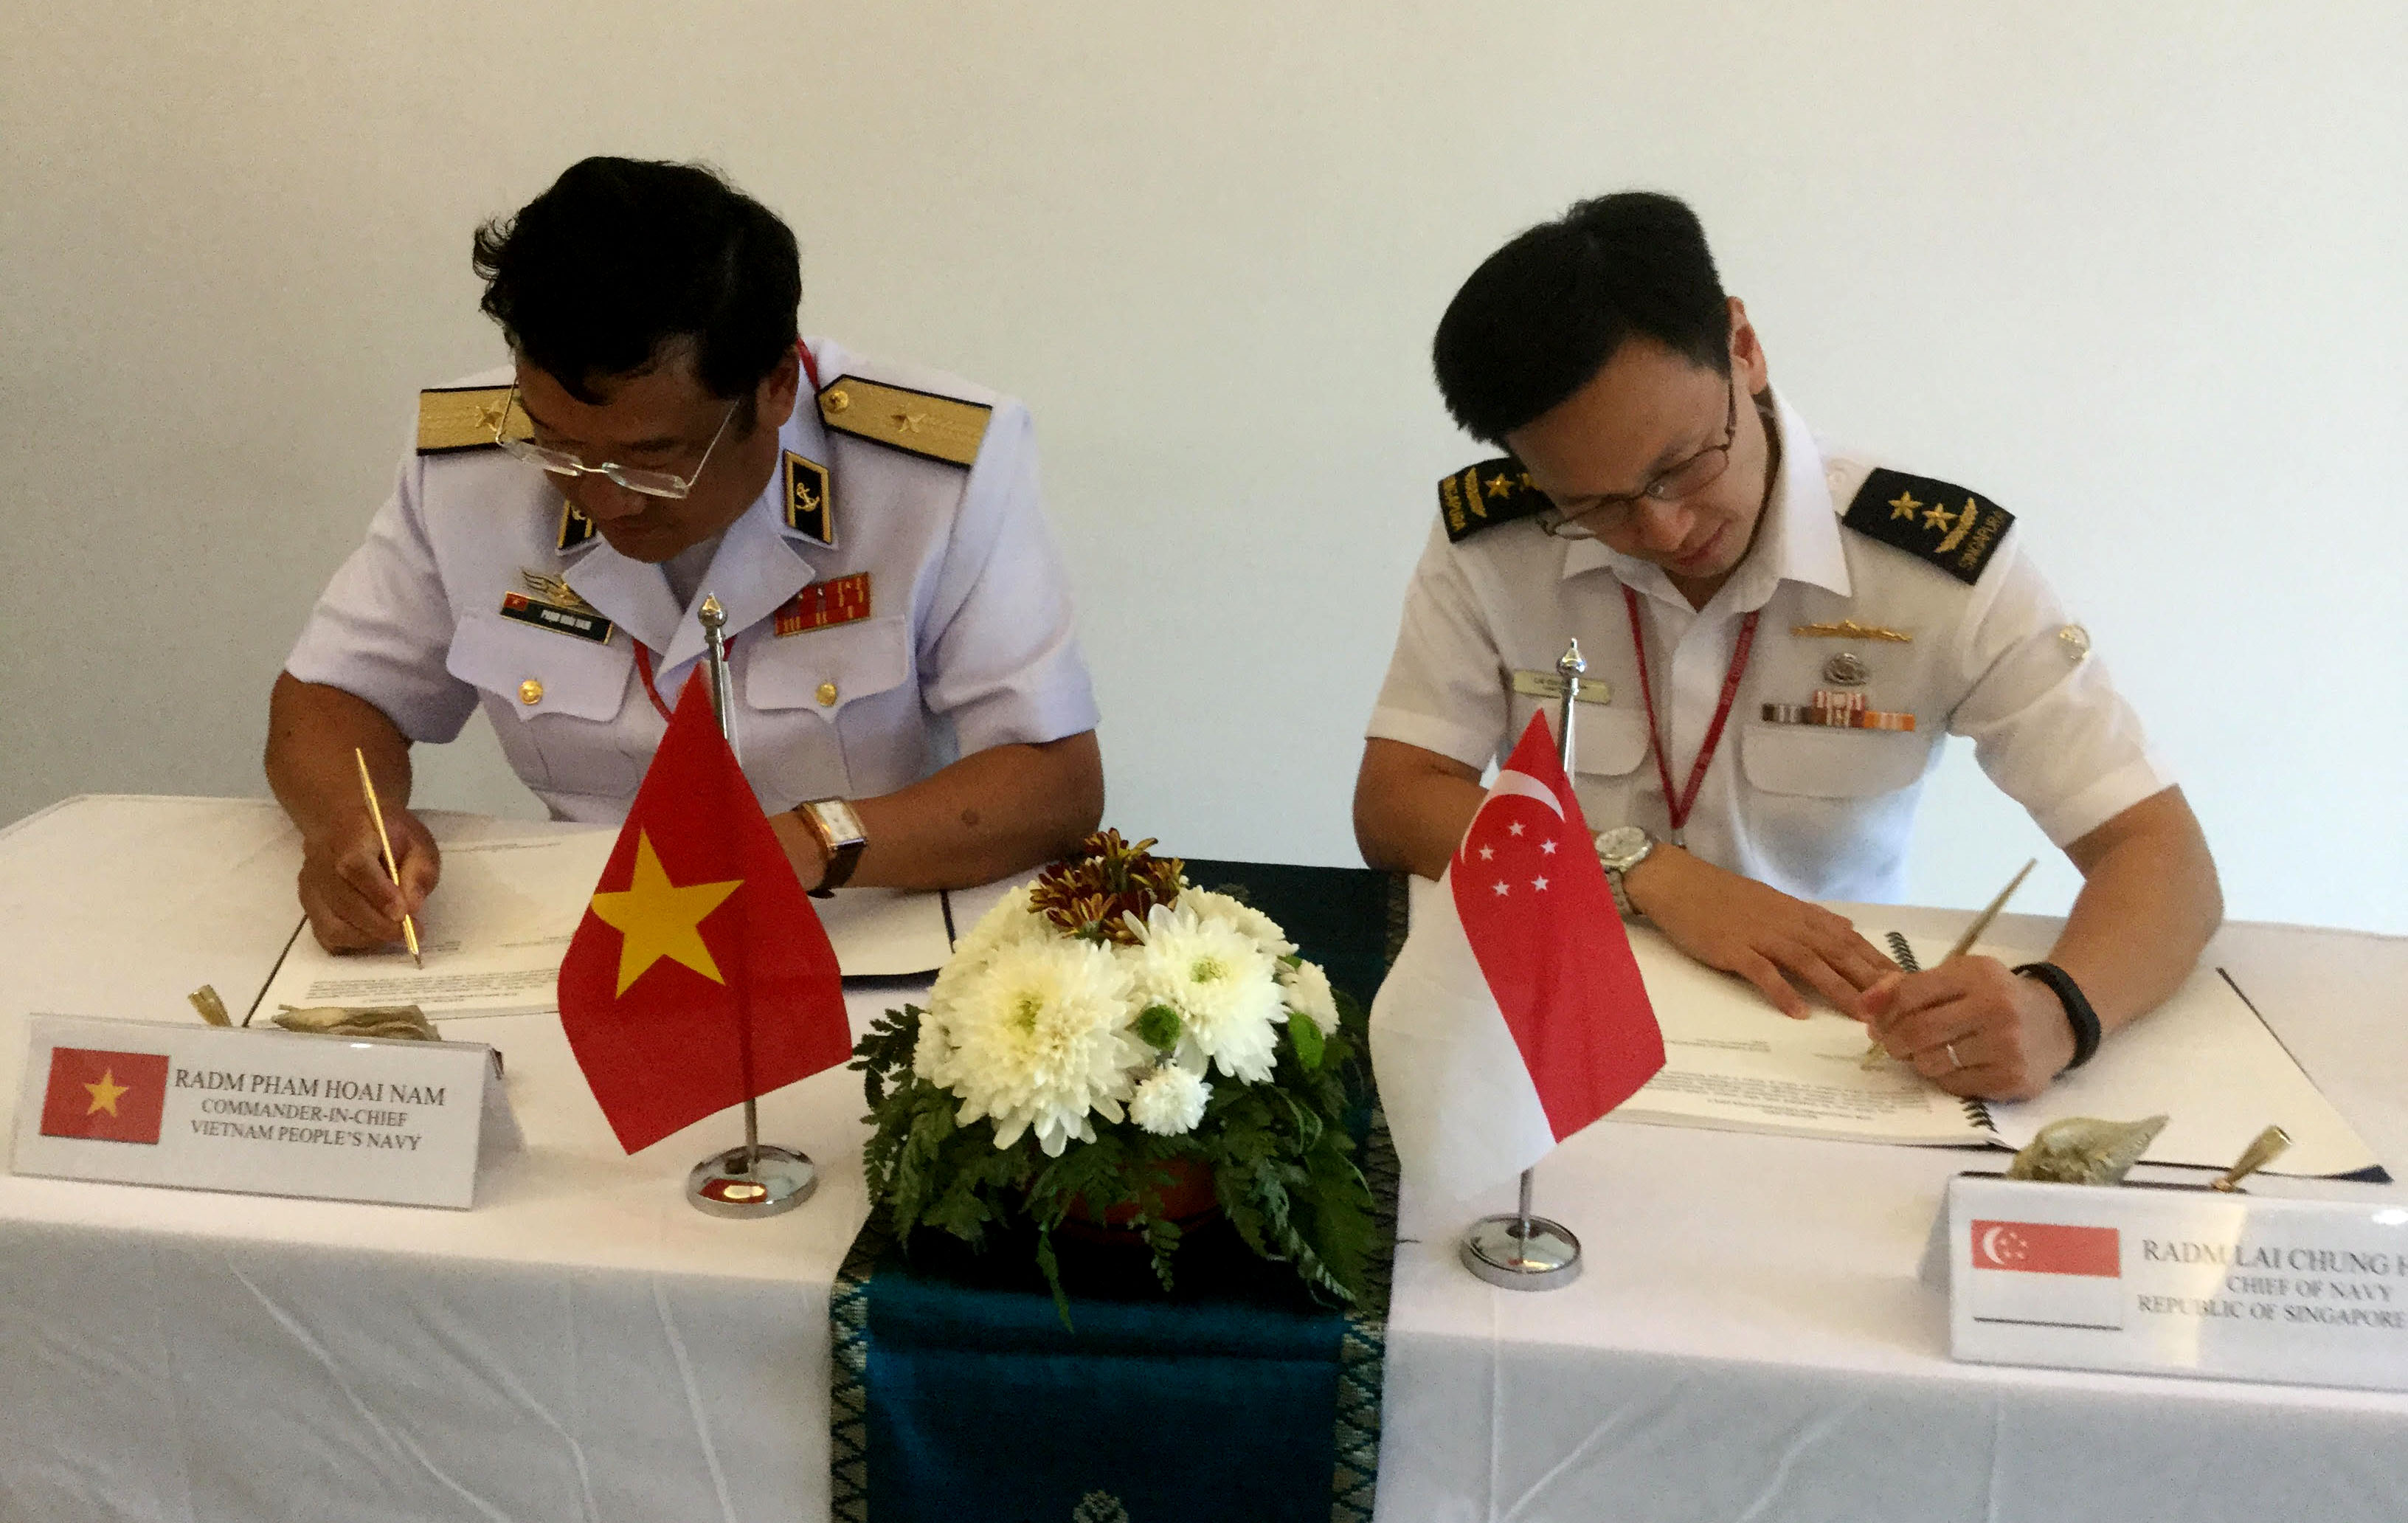 Chuẩn đô đốc Phạm Hoài Nam, Tư lệnh Hải quân nhân dân Việt Nam và Chuẩn đô đốc Lai Chung Han, Tư lệnh Hải quân Singapore ký kết quy chế cứu nạn tàu ngầm 